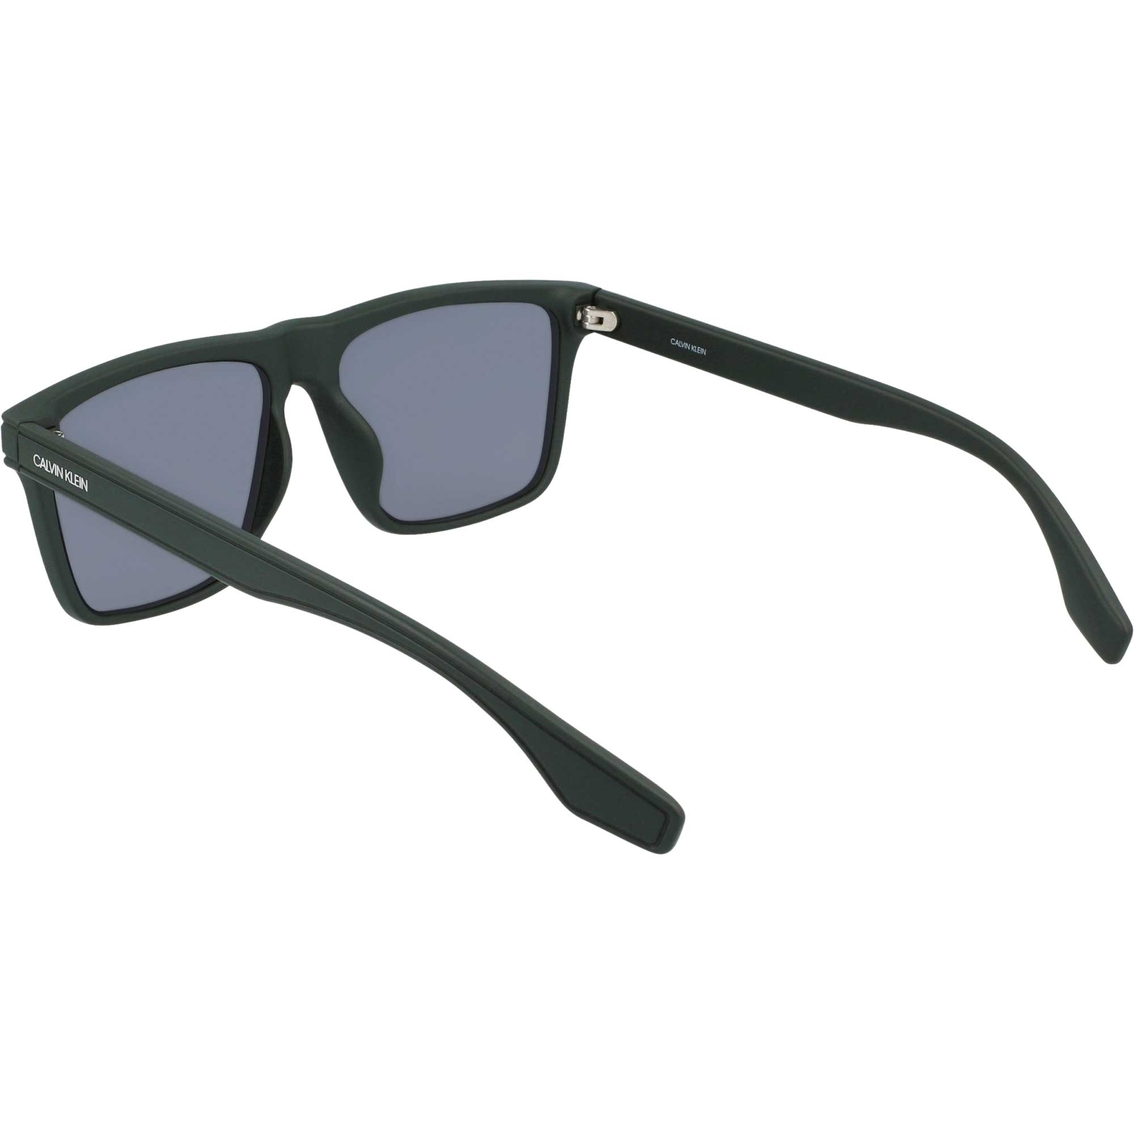 Calvin Klein Square Sunglasses Ck20521 | Men's Sunglasses | Swim Shop |  Shop The Exchange